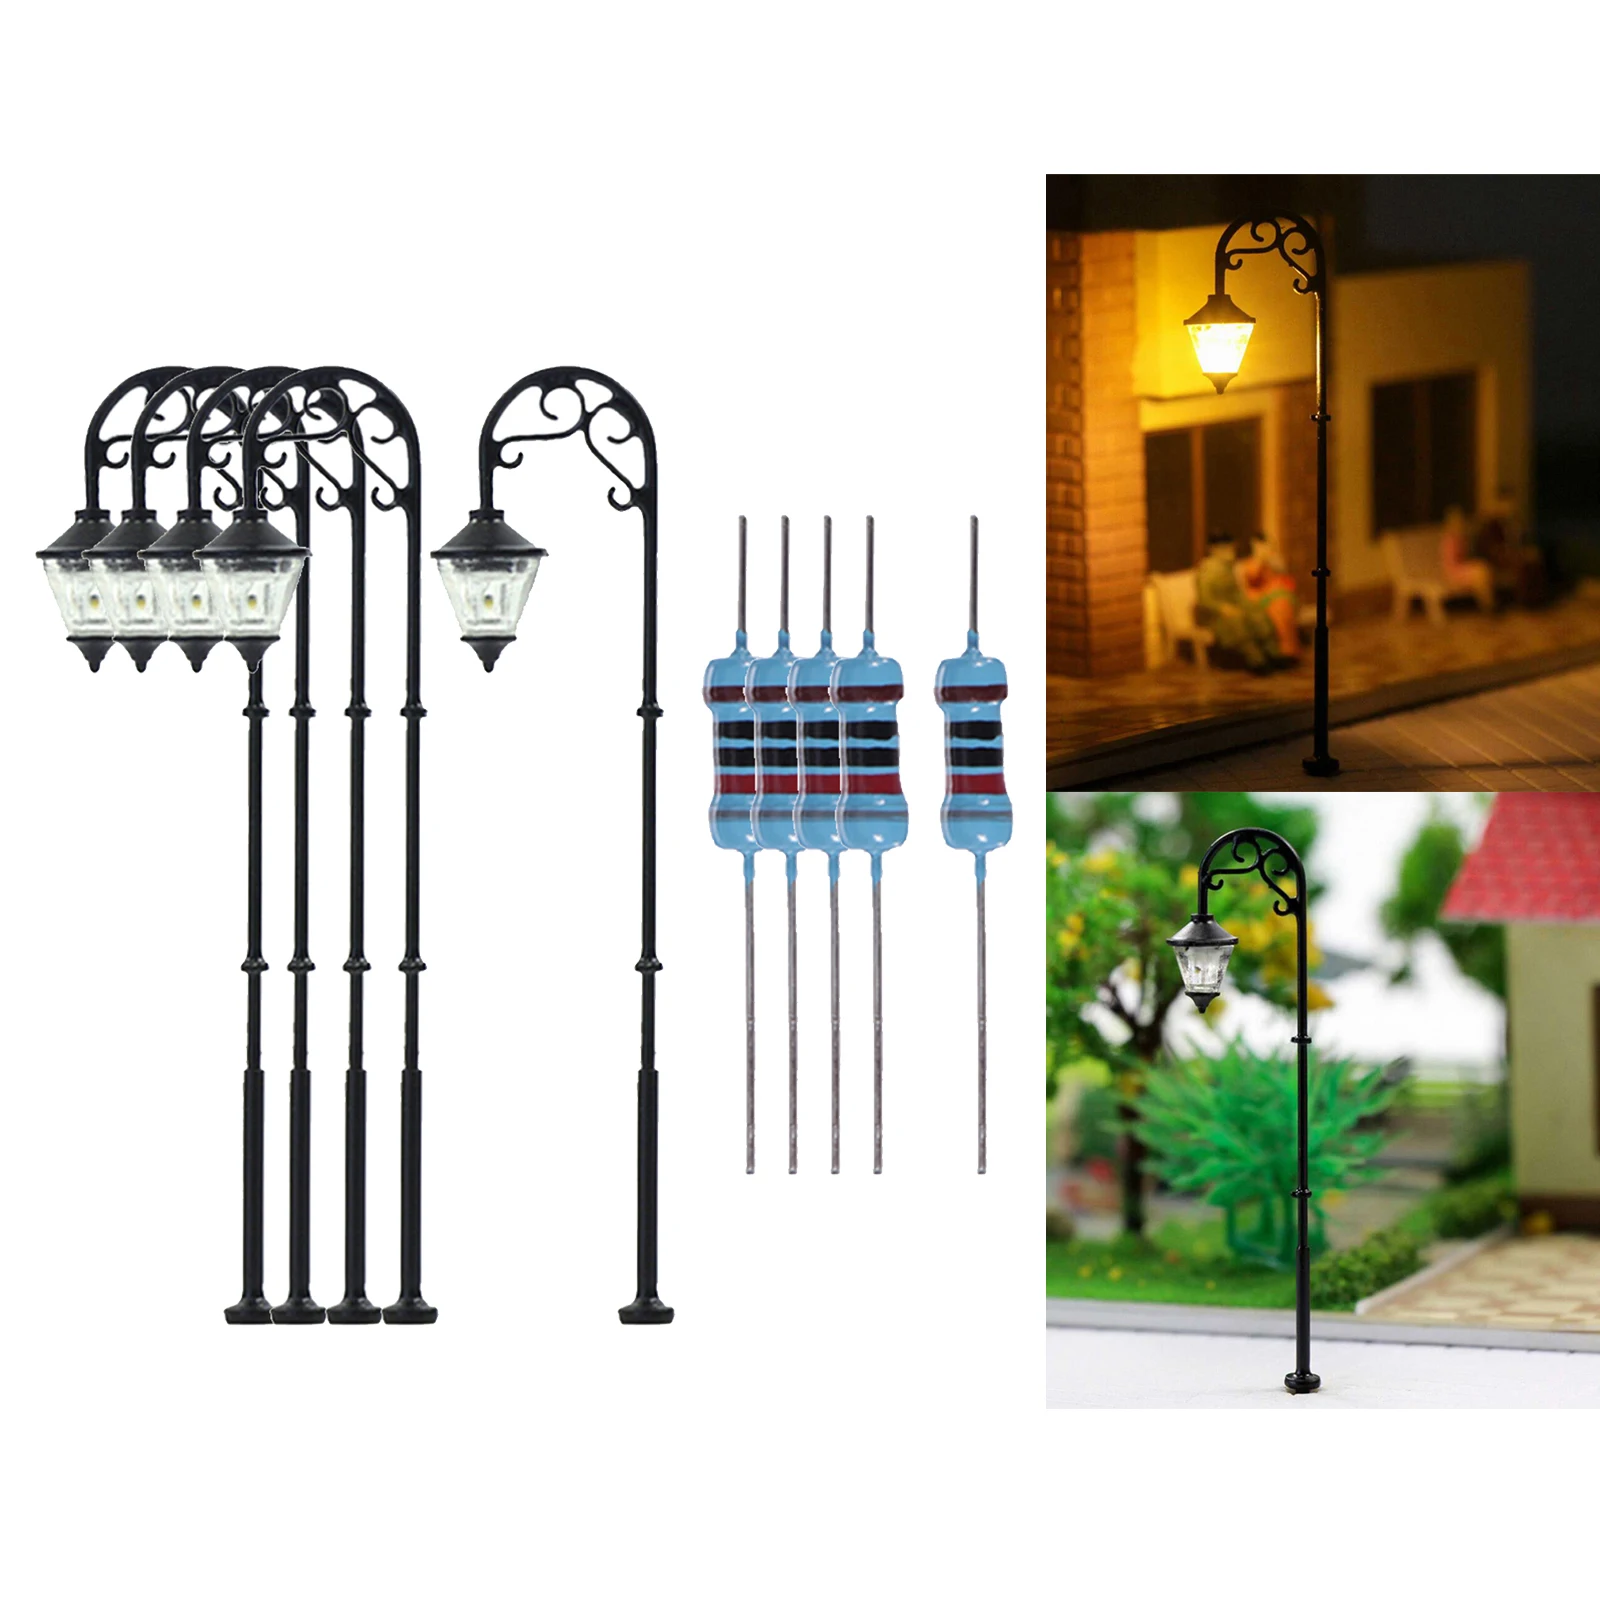 10pcs 1:87 HO Scale Retro Model Street Lamp Layout Lamppost Garden Landscape